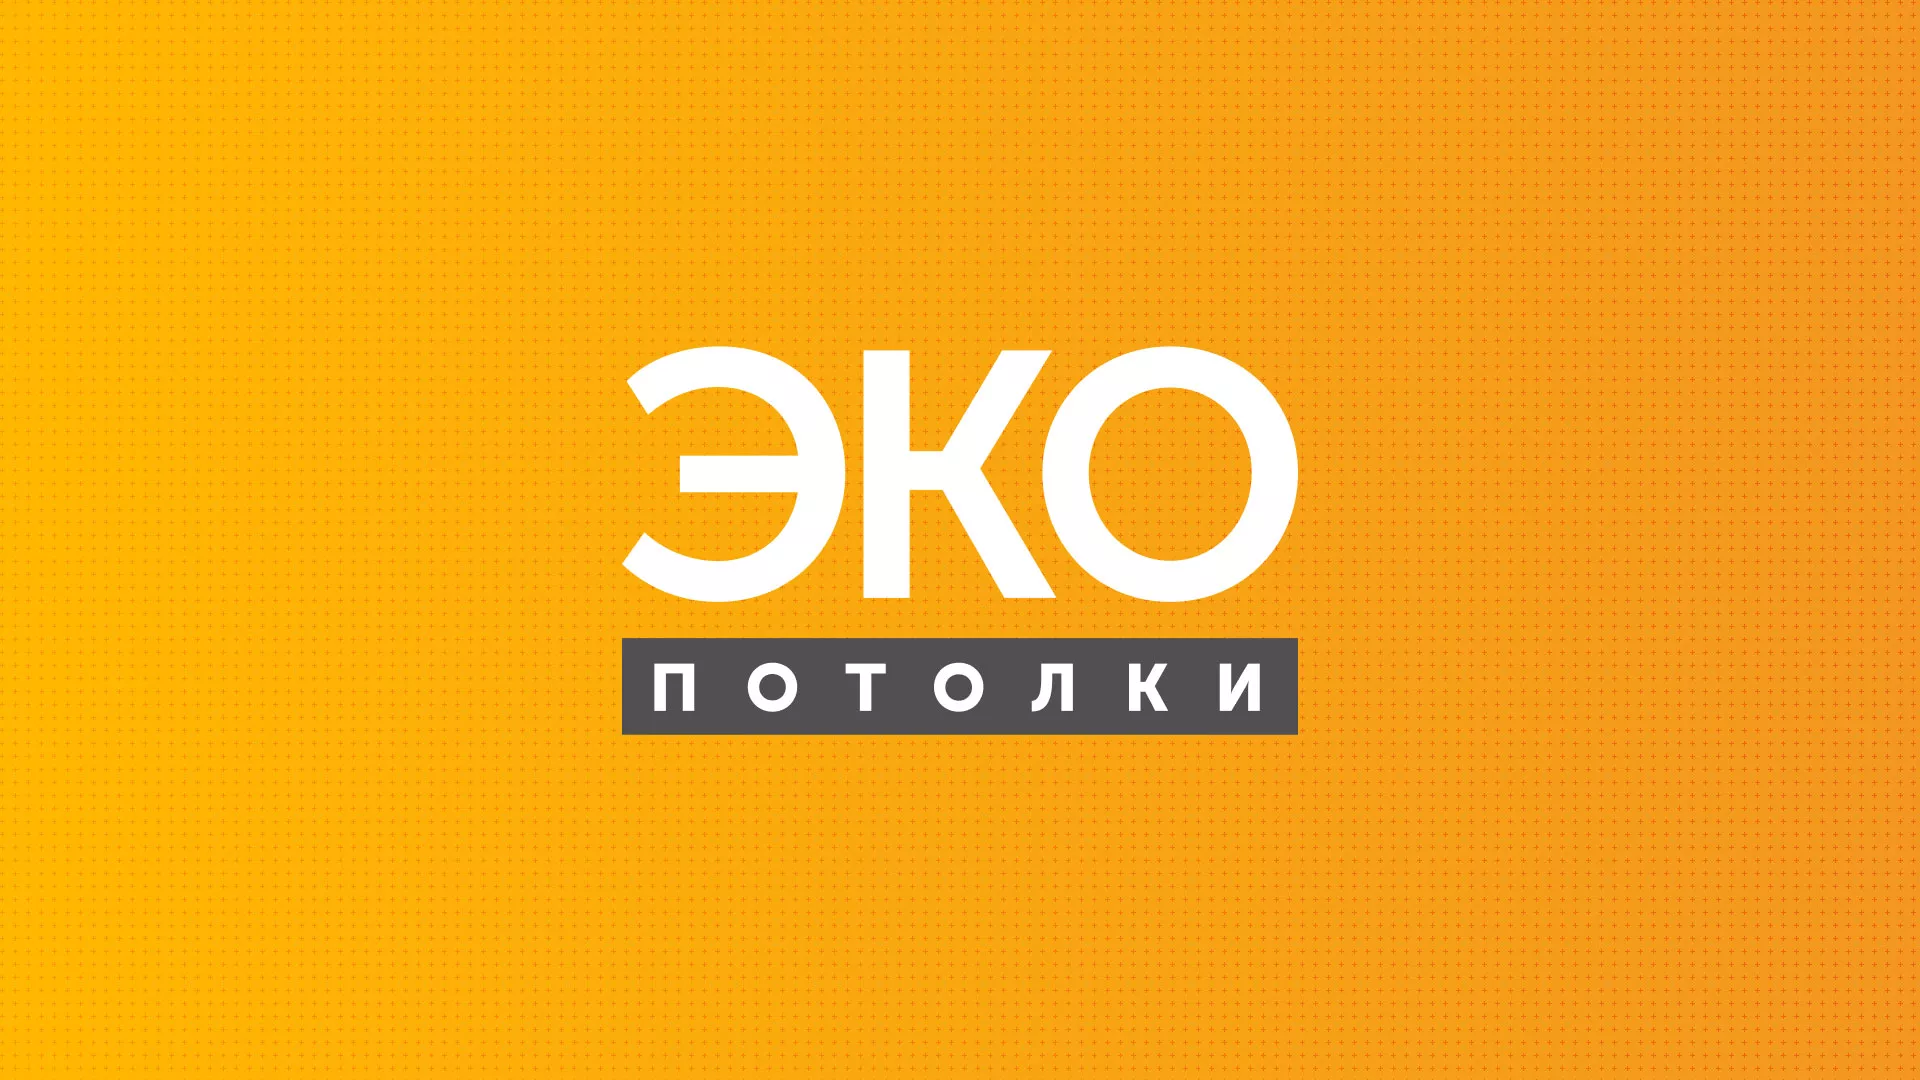 Разработка сайта по натяжным потолкам «Эко Потолки» в Конаково